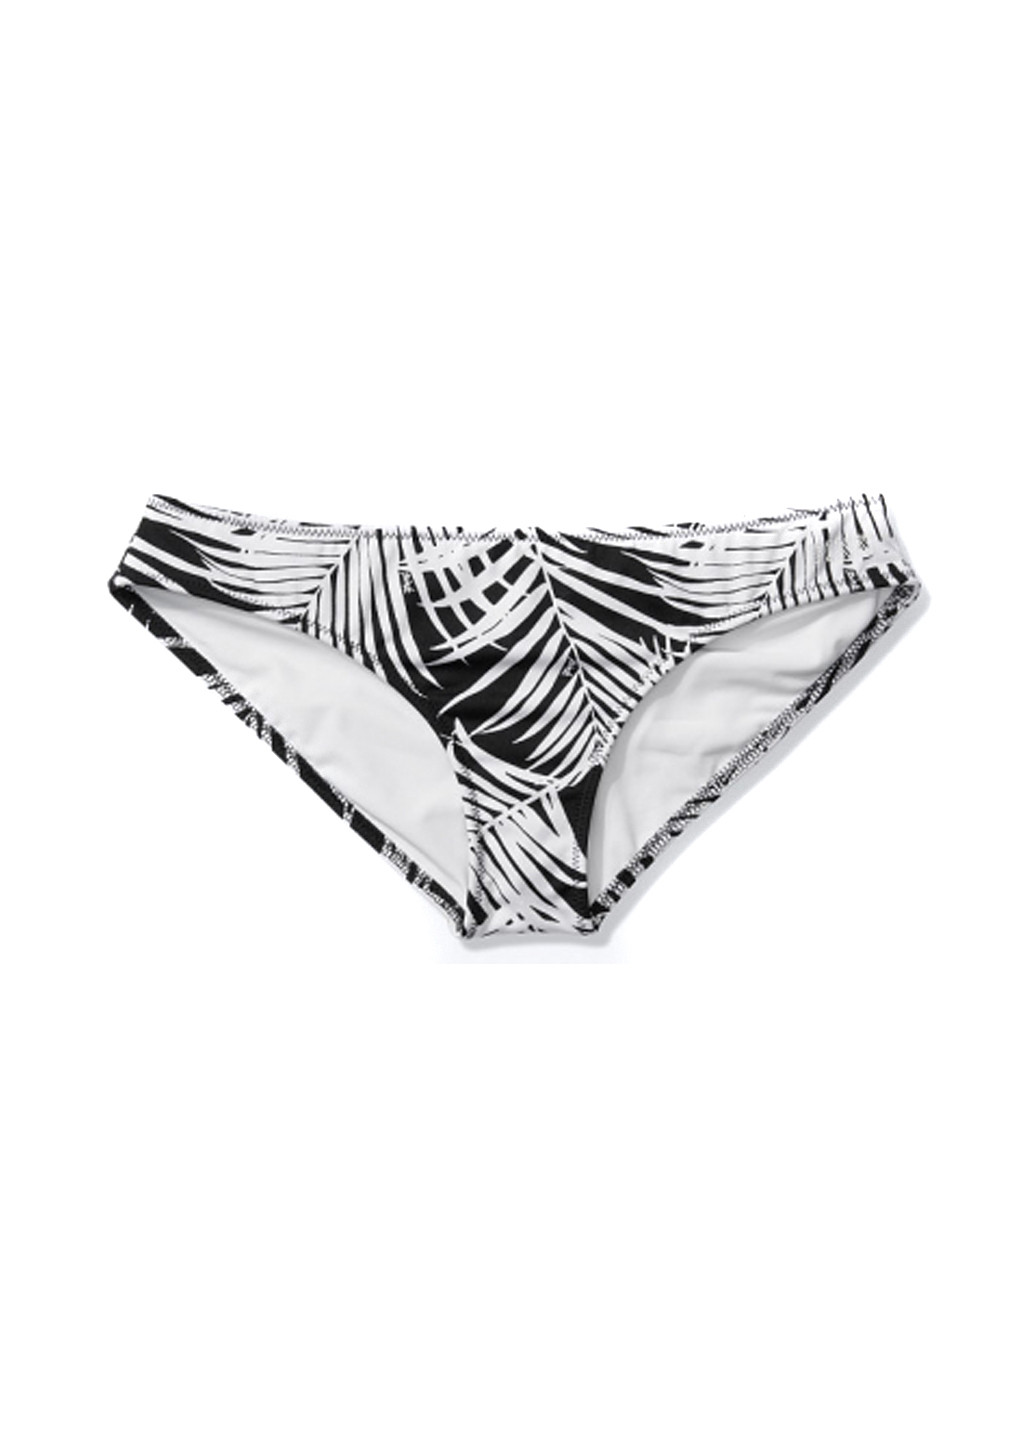 Черно-белый летний купальник (лиф, трусы) бандо, раздельный Victoria's Secret